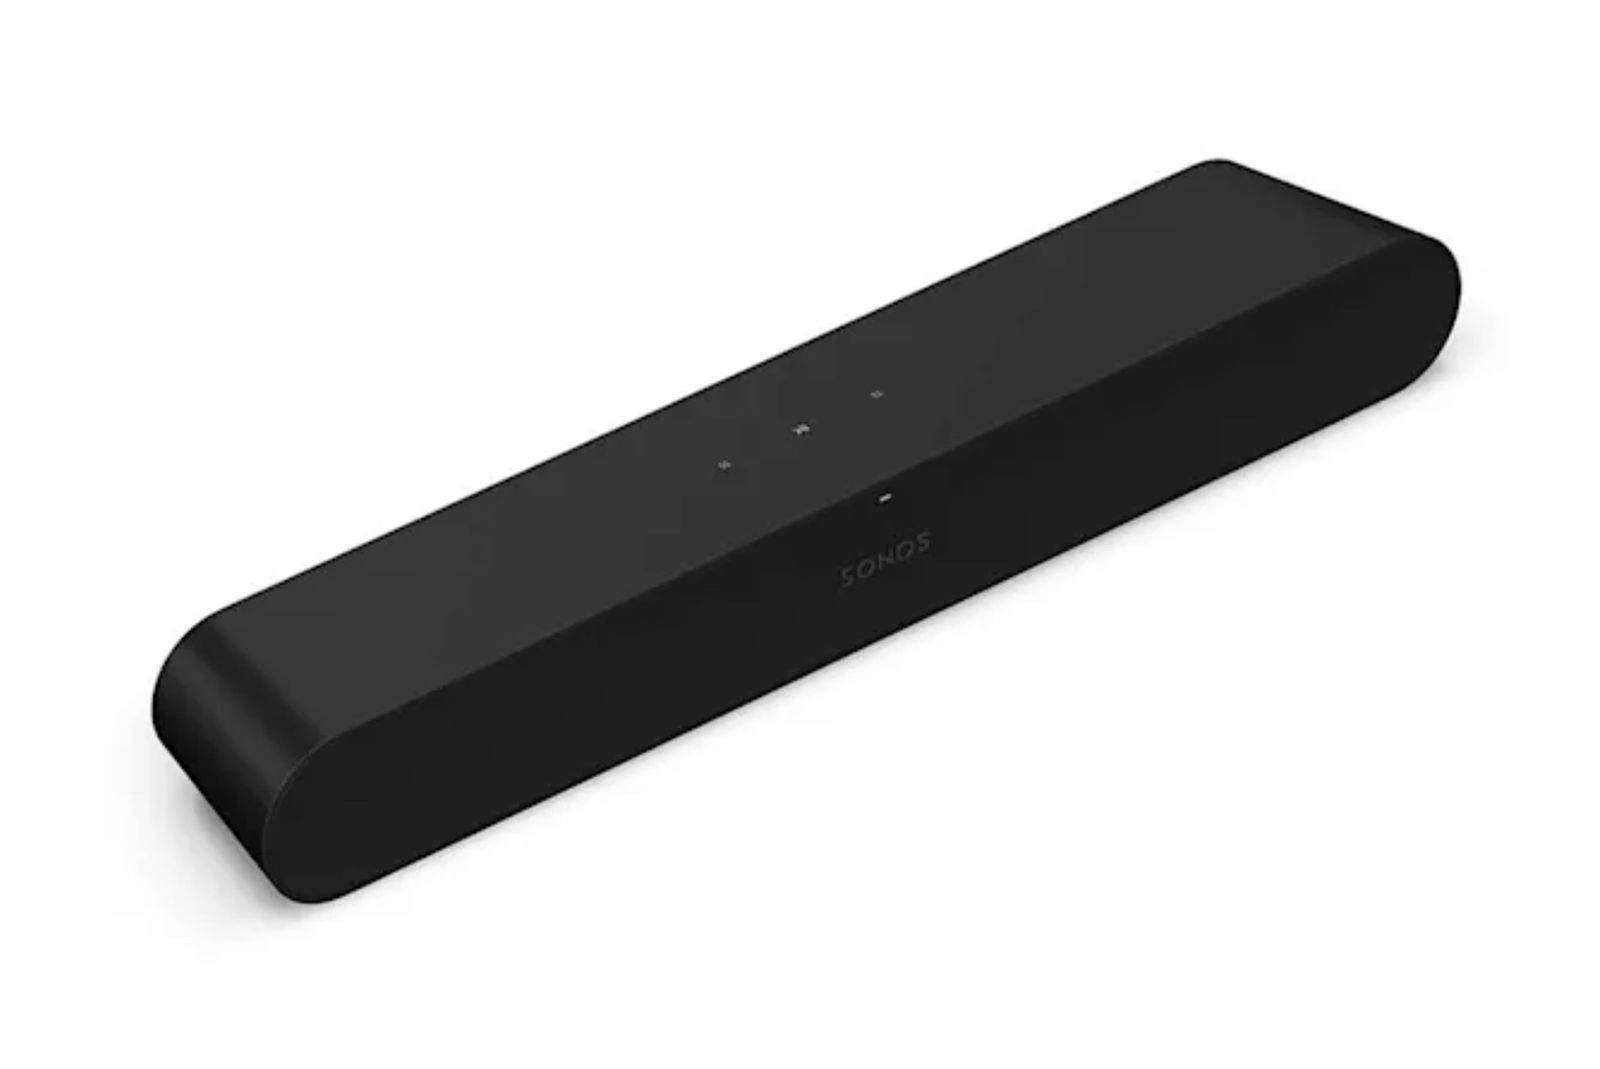 Sonos’ next soundbar will be called the Sonos Ray photo 1